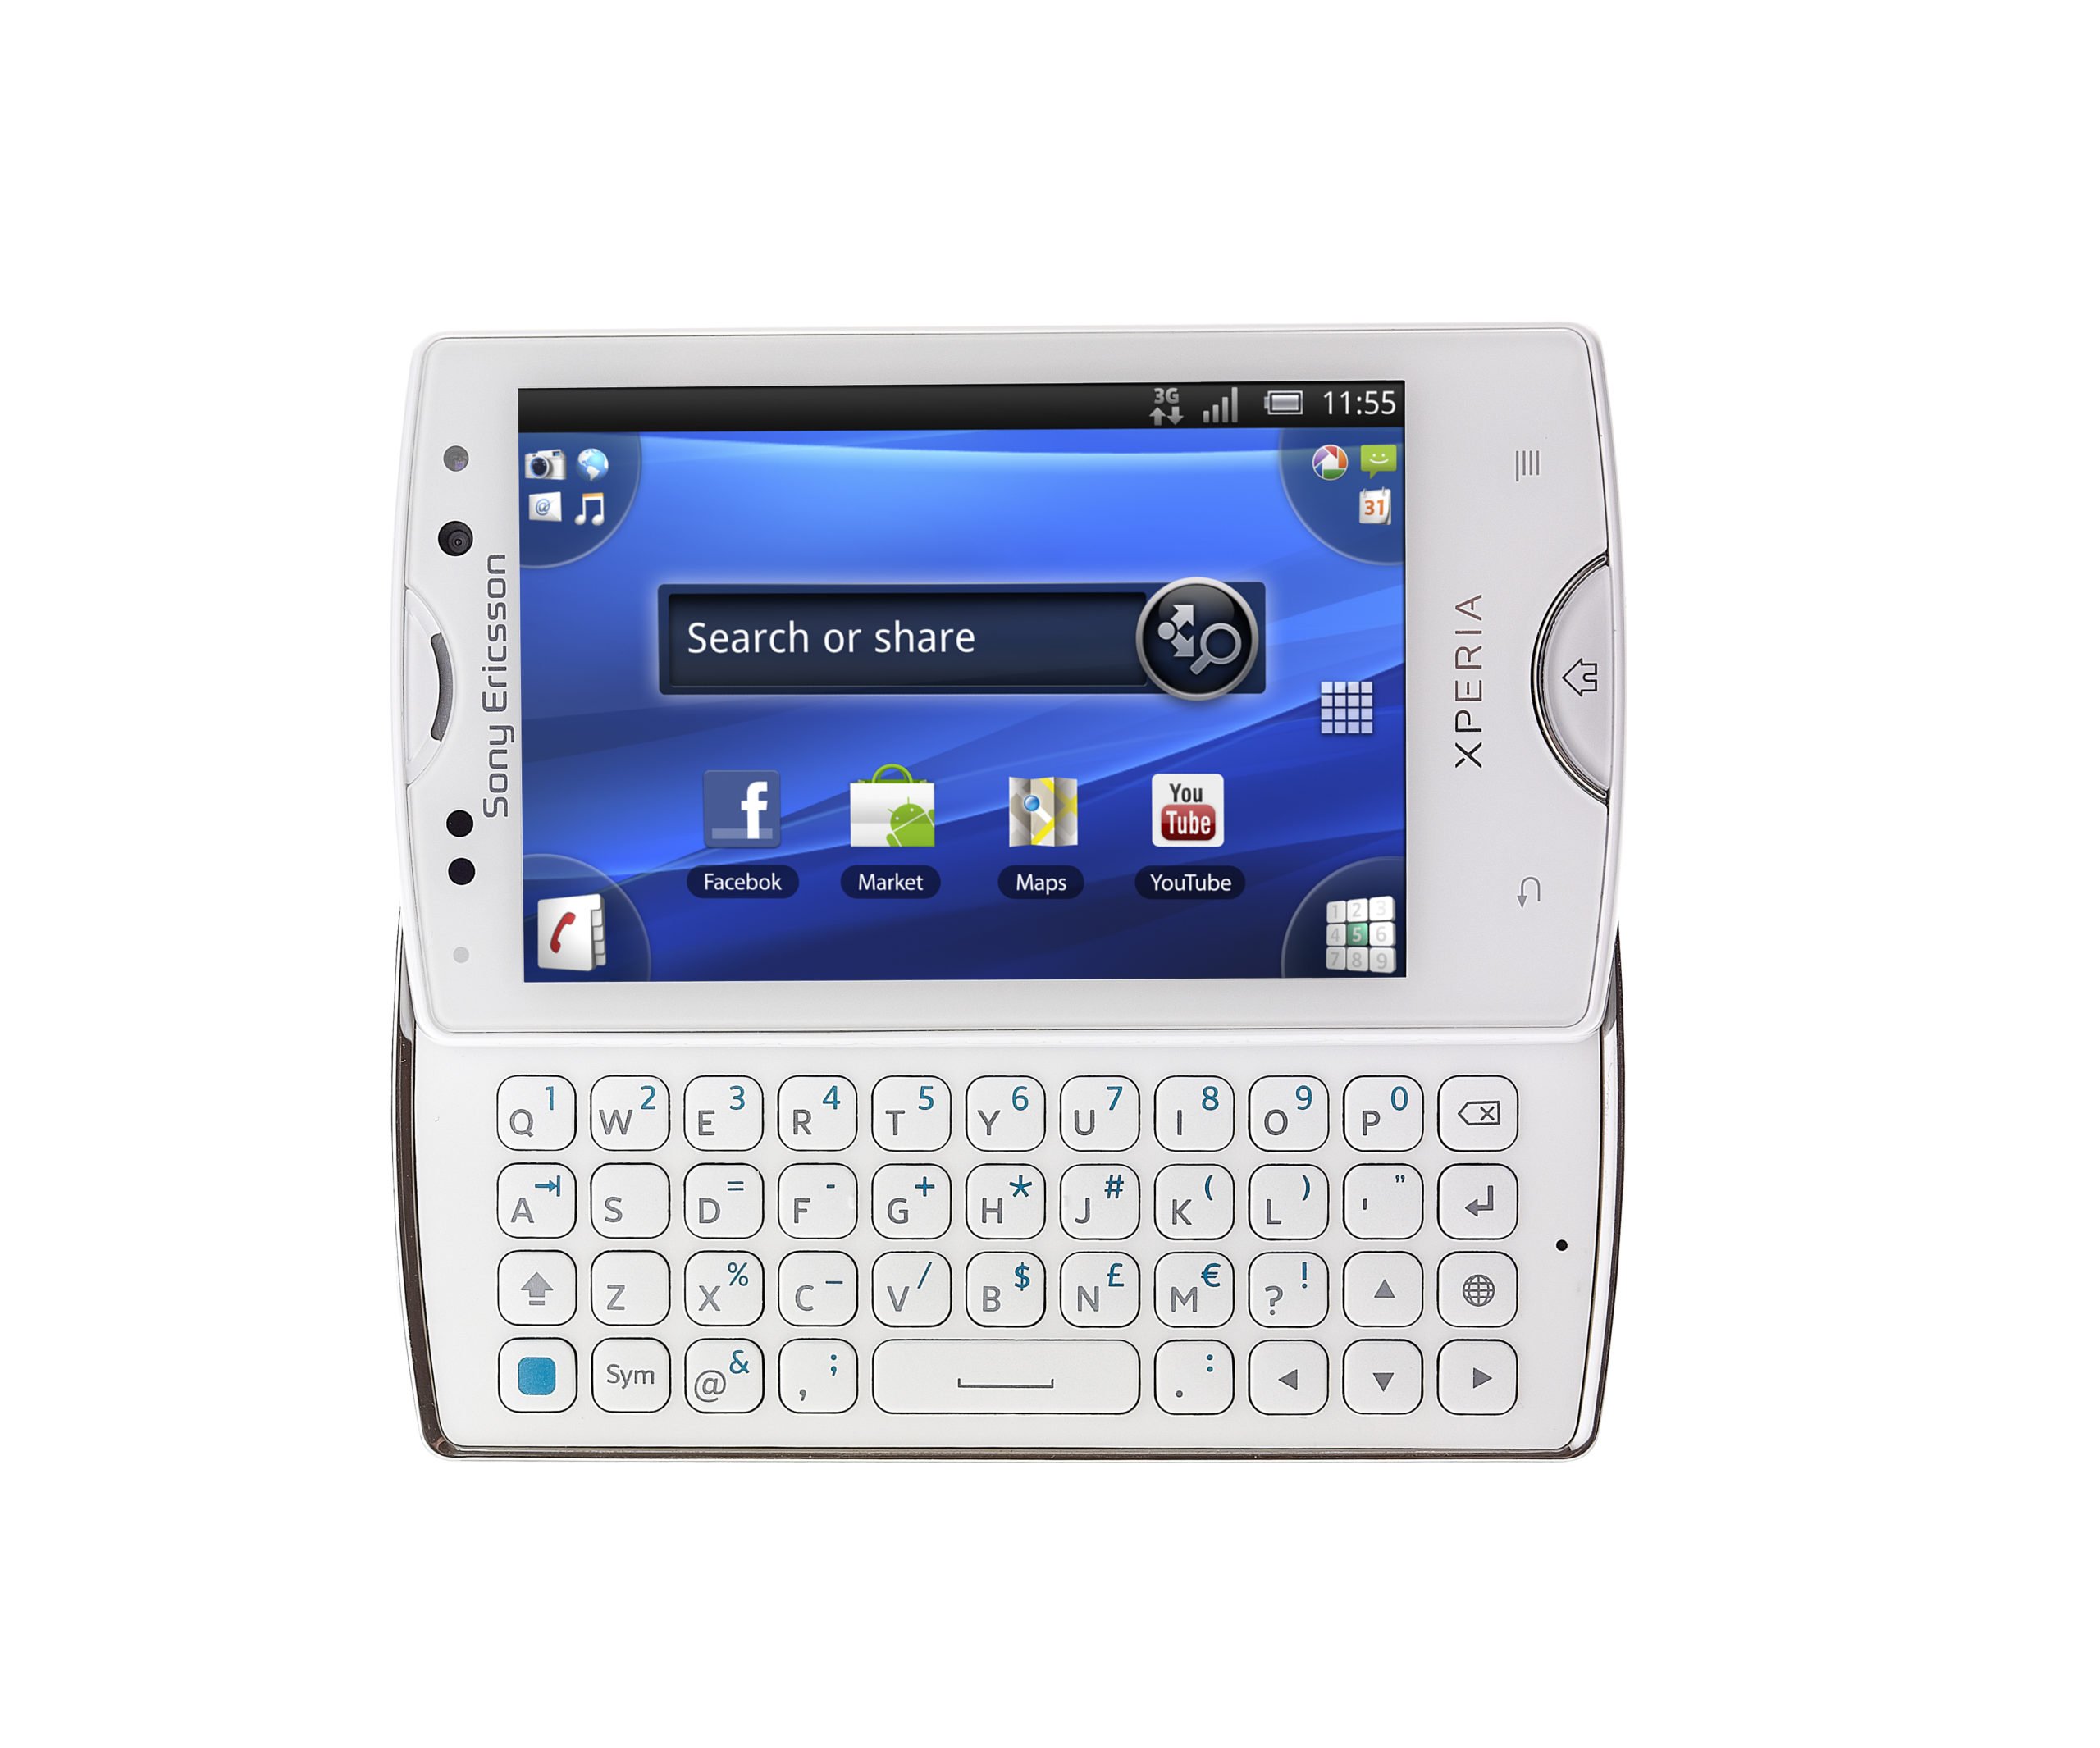 Sony Ericsson Xperia x10. Sony Xperia Mini. Sony Ericsson Xperia Mini. Xperia x10 Mini Pro.